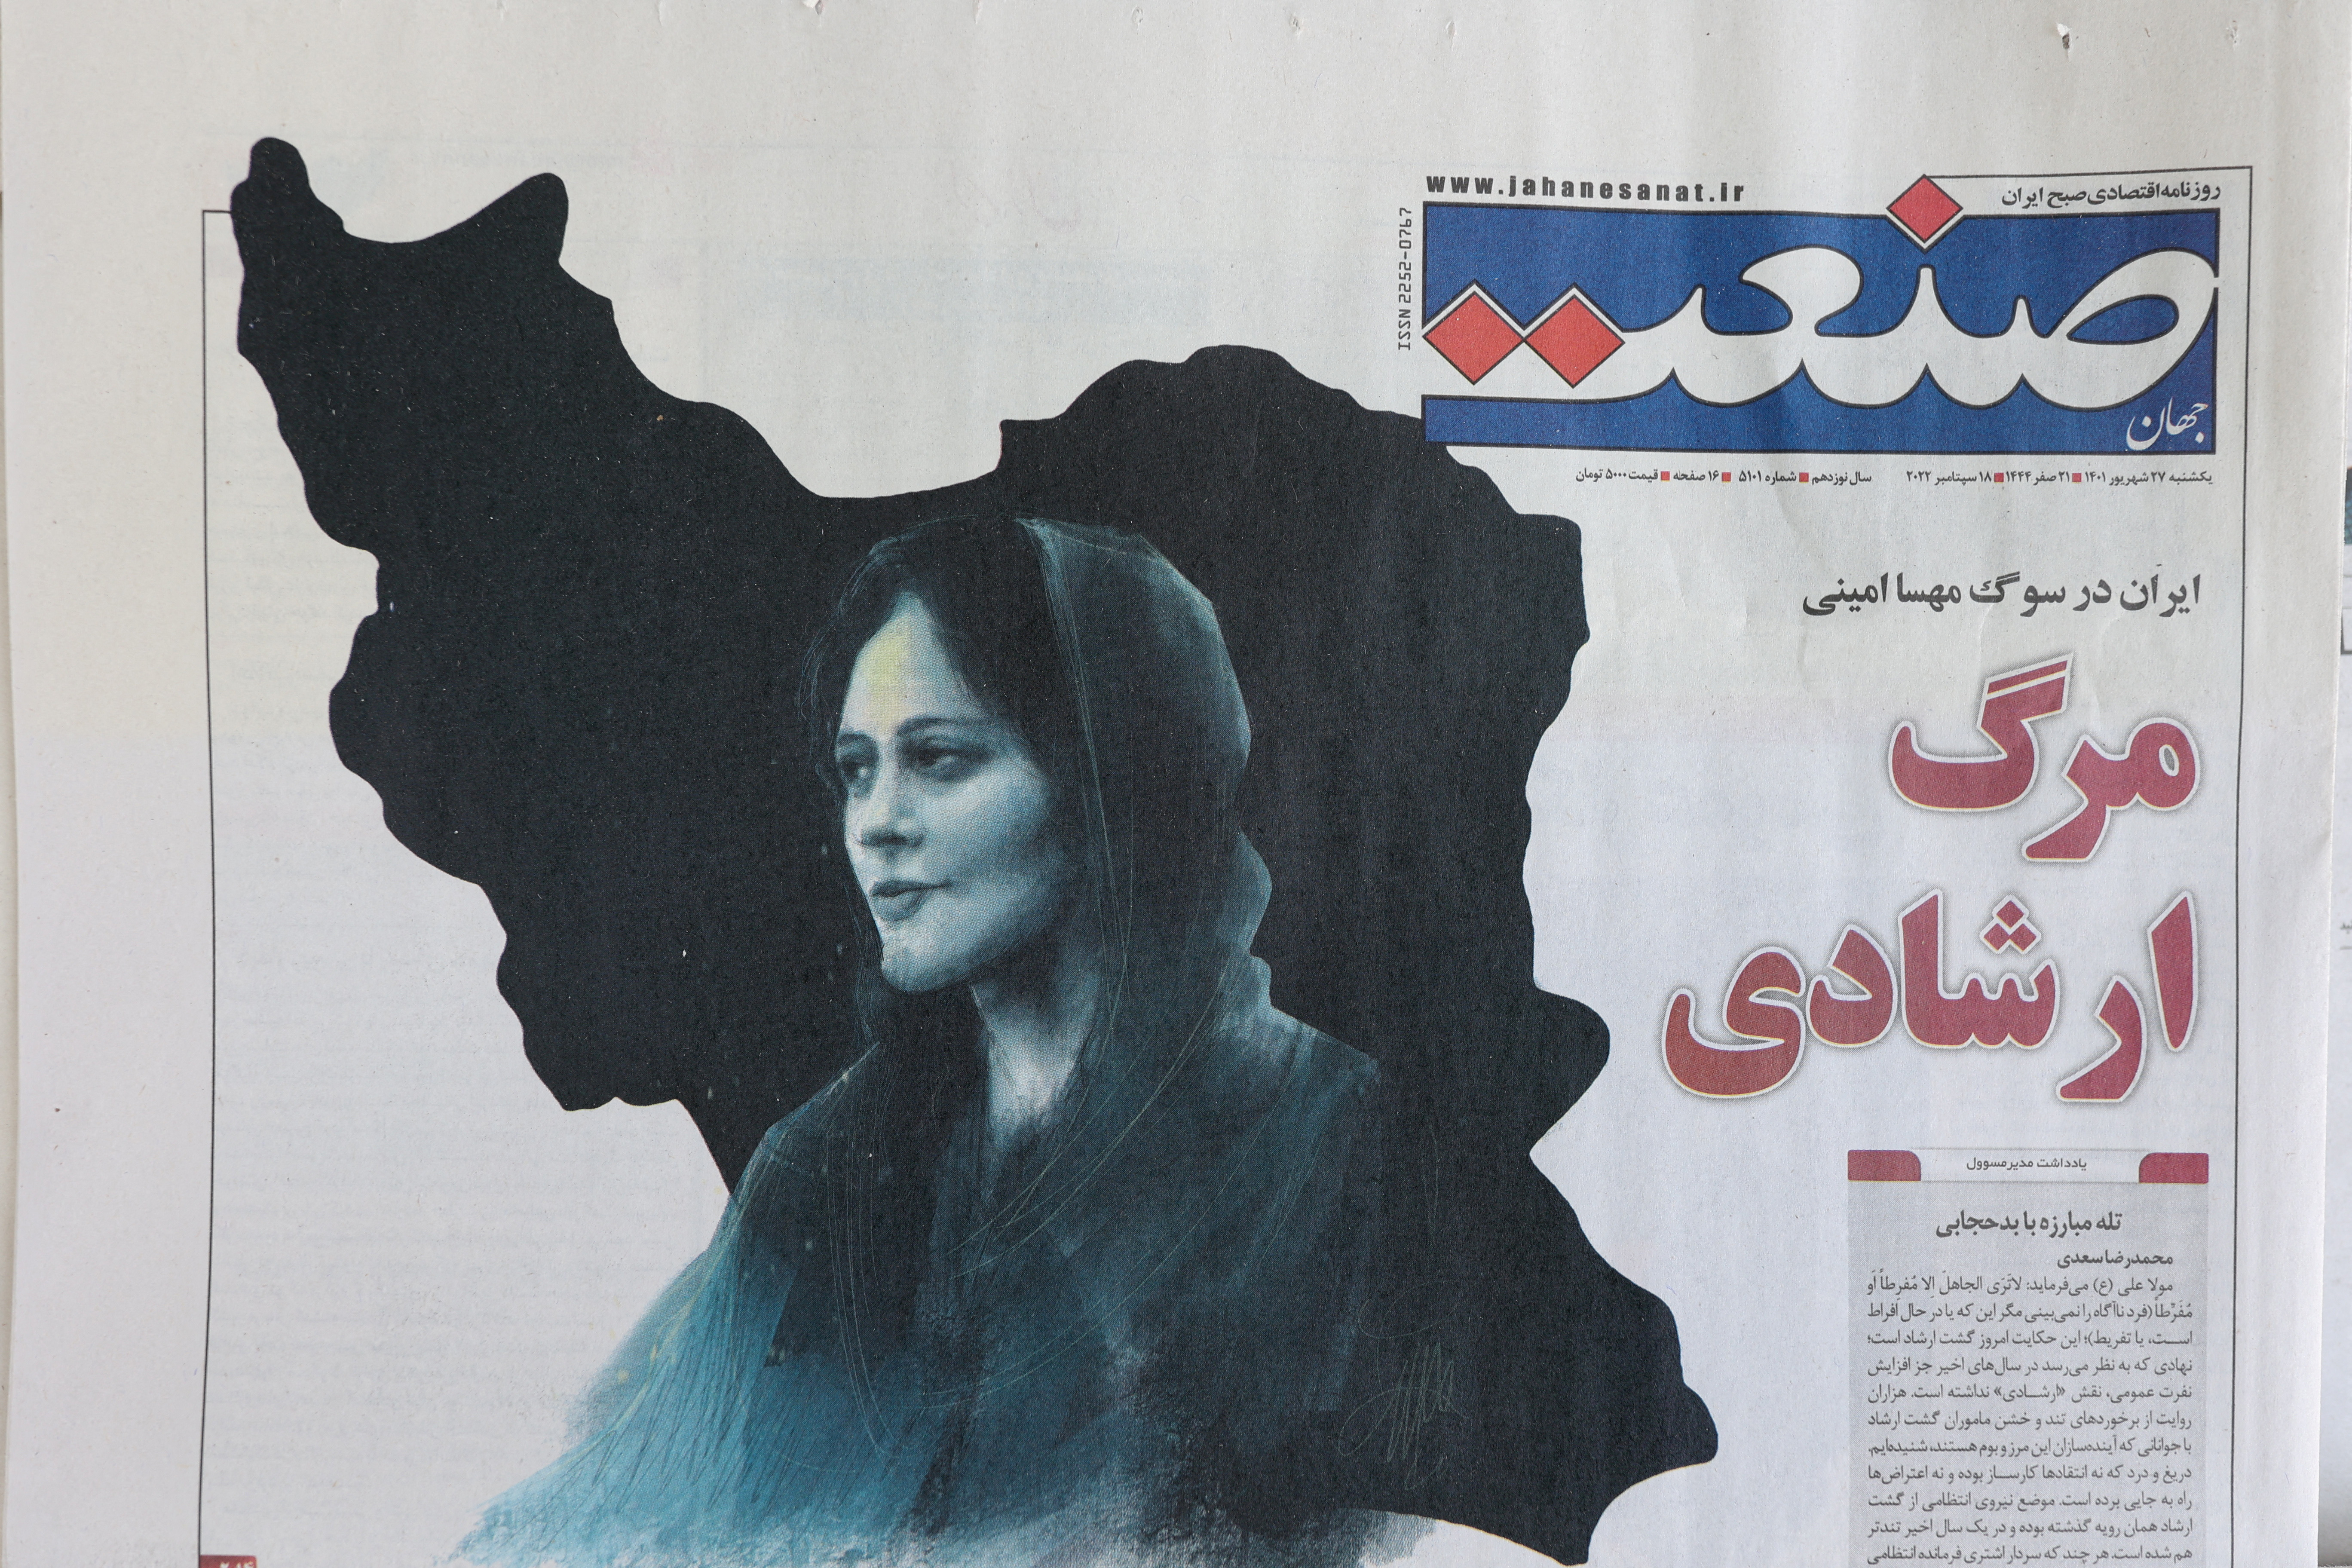 FOTO DE ARCHIVO: Un periódico con una imagen de portada de Mahsa Amini, una mujer que murió después de ser arrestada por la "policía de la moralidad" de la República Islámica, en Teherán, Irán, el 18 de septiembre de 2022. Majid Asgaripour/WANA (West Asia News Agency) vía REUTERS
